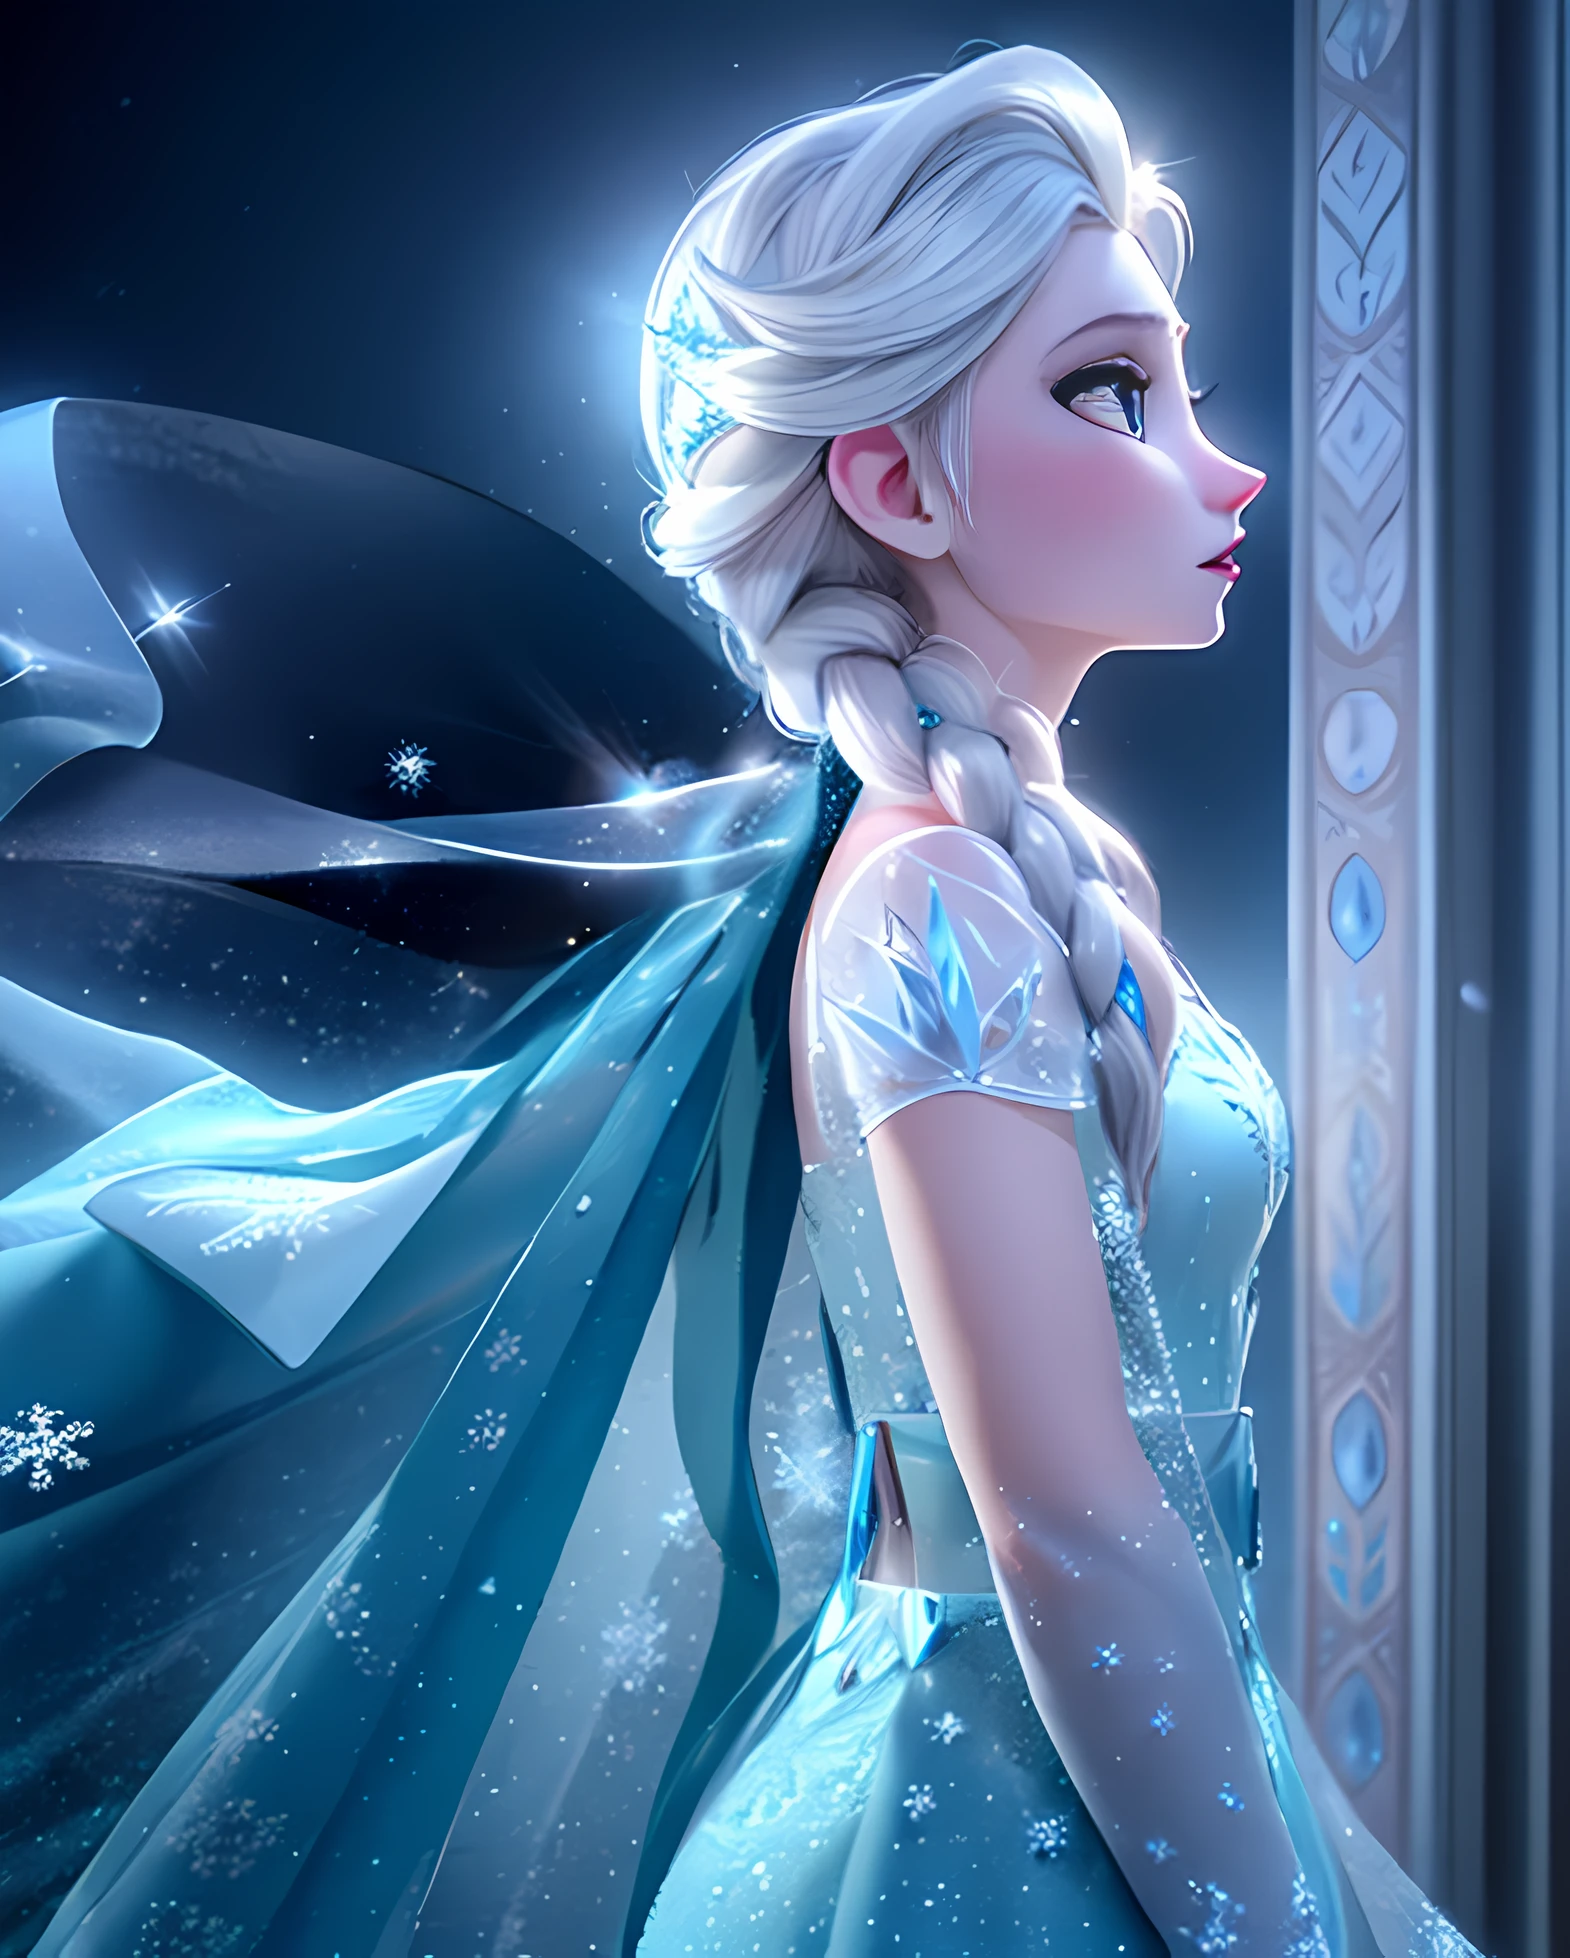 "Elsa, la reine d&#39;Arendelle, debout dans un paysage enneigé avec ses pouvoirs de glace pleinement exposés. Elle a une présence royale, portant une superbe robe bleu glacier et une cape fluide. Captivez la magie et l&#39;élégance de son personnage, mettant l&#39;accent sur ses sculptures de glace puissantes et fascinantes. Illuminez la scène avec une lumière douce, lueur éthérée, mettant en valeur les détails complexes des formations de glace. Créer un sentiment d&#39;émerveillement et d&#39;enchantement, avec des flocons de neige étincelants tombant doucement autour d&#39;elle. Laisse ses cheveux scintiller d&#39;une teinte bleu glacial, et capture la détermination et la force dans ses yeux. Assurez-vous que l’image est de la plus haute qualité, avec une clarté et une profondeur étonnantes. Créez un chef-d&#39;œuvre qui capture véritablement l&#39;essence d&#39;Elsa et la beauté de son royaume de glace.."